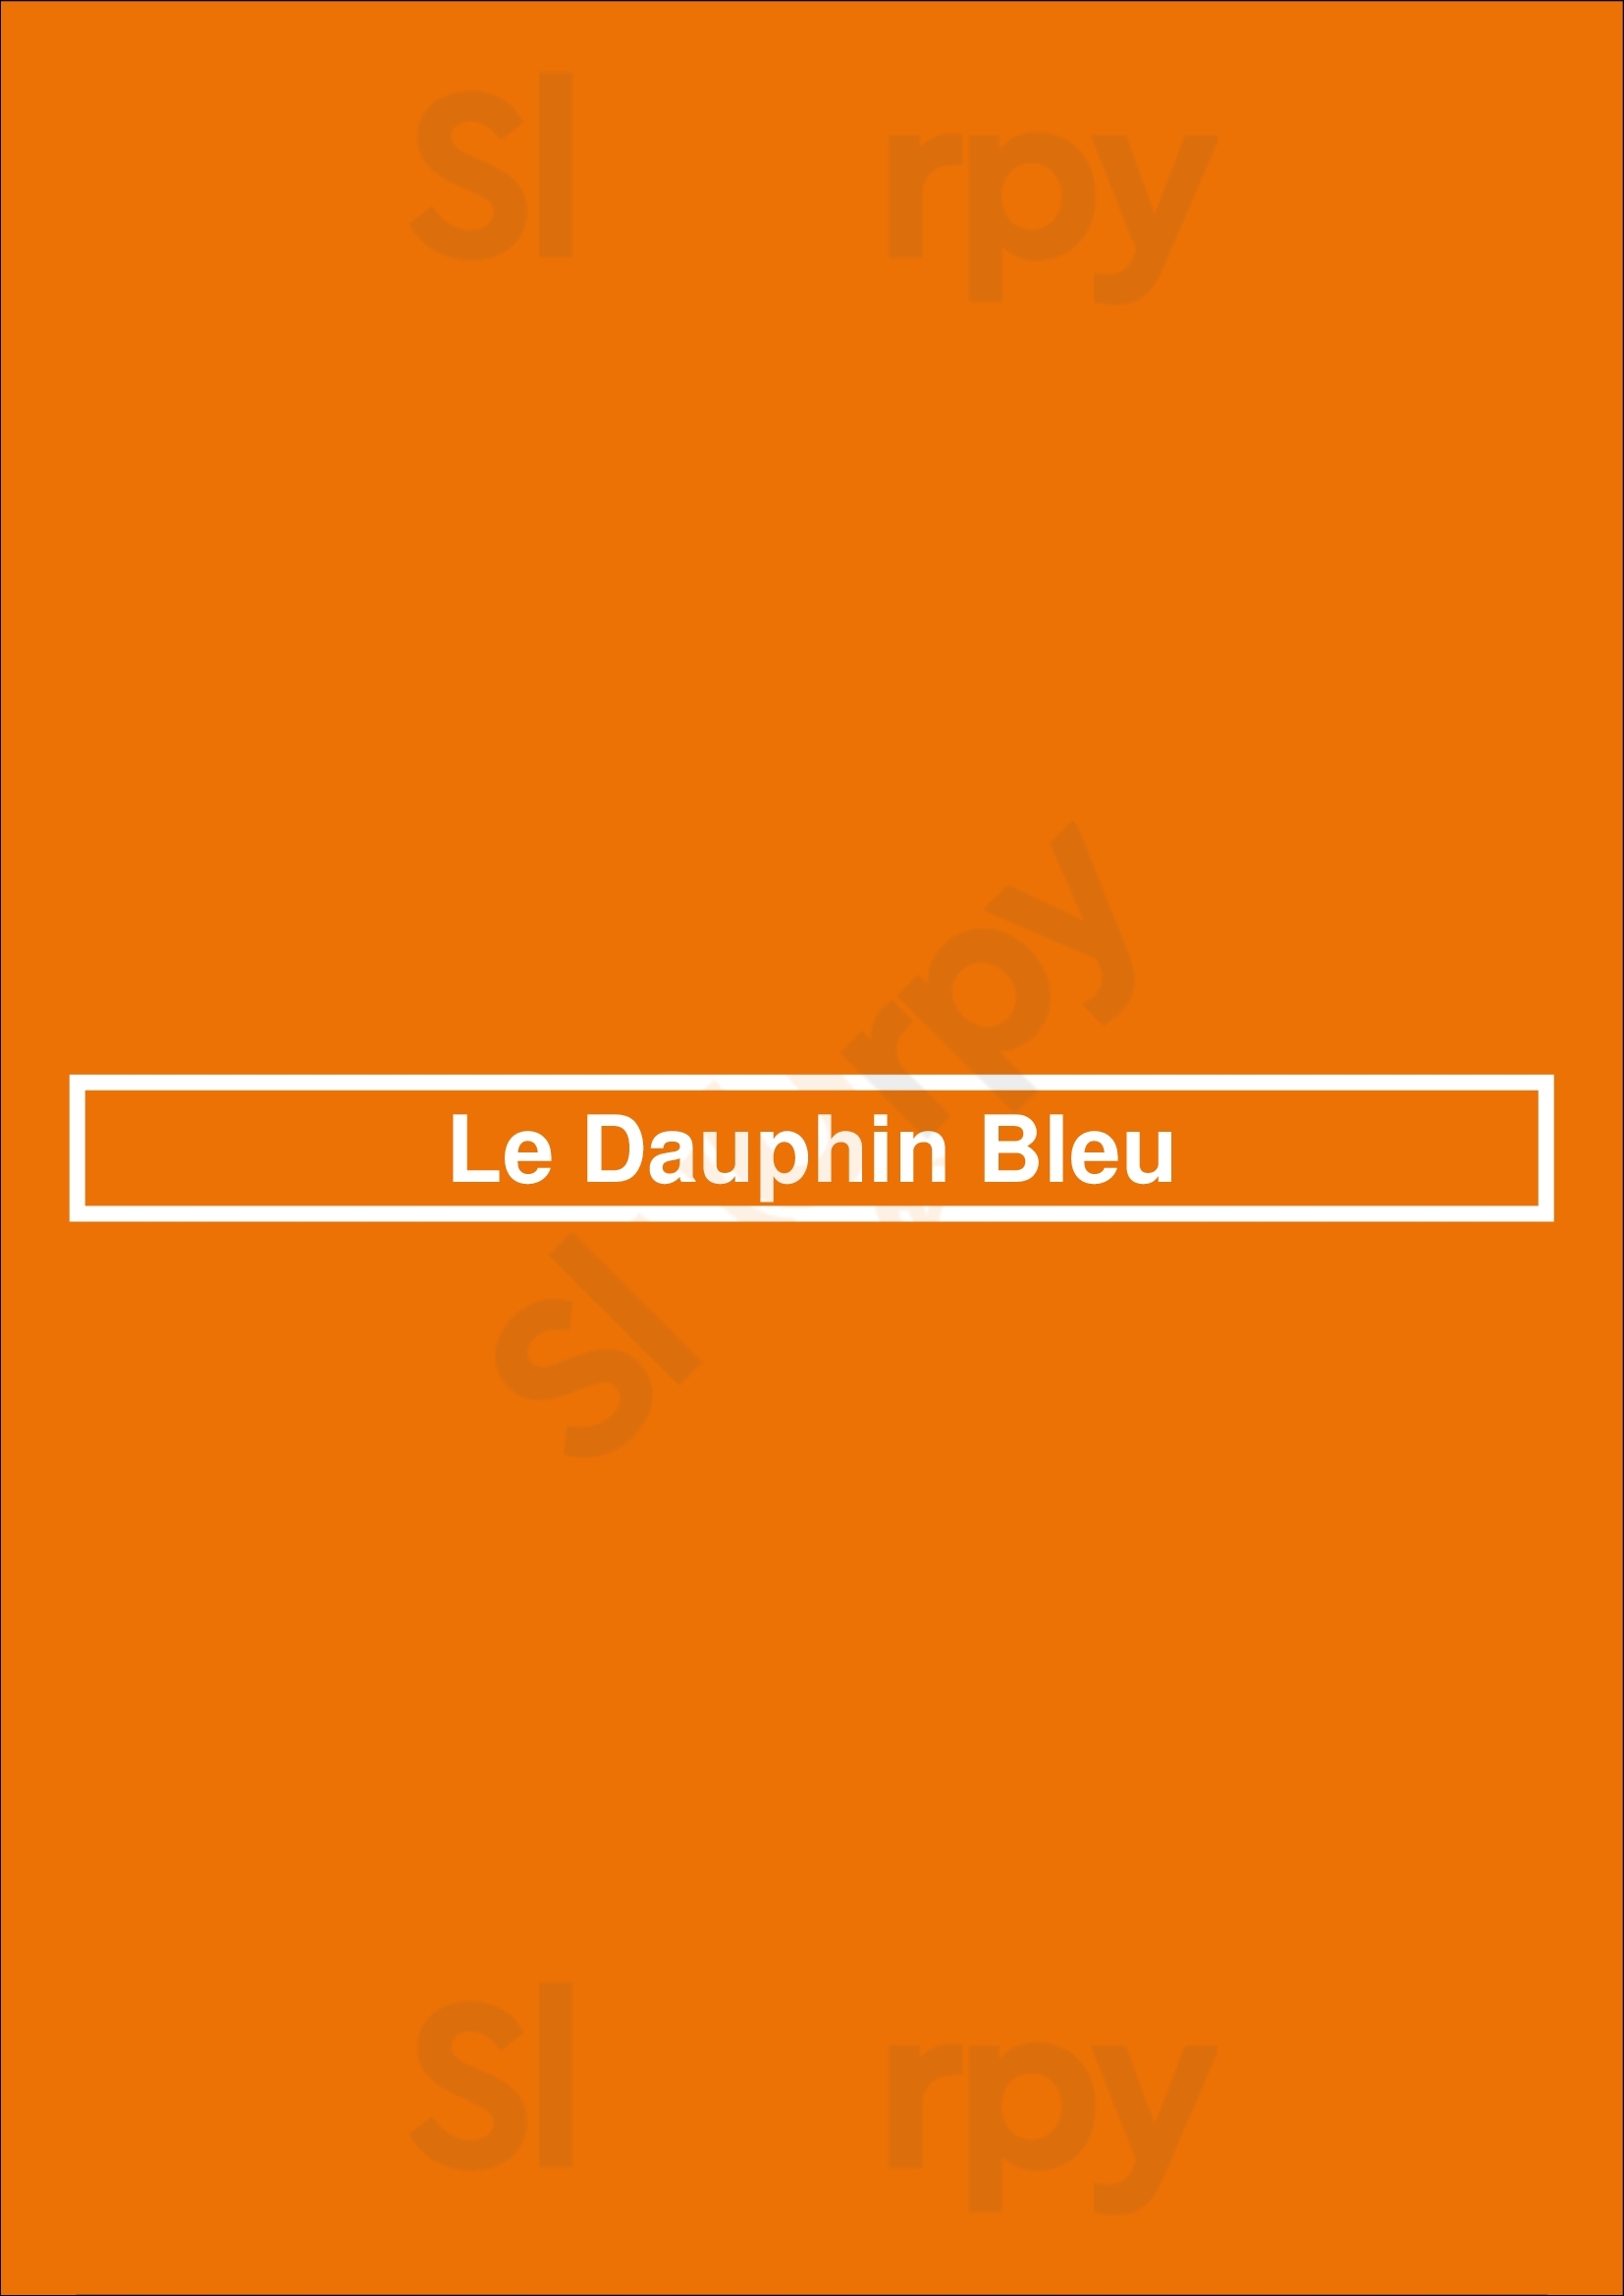 Le Dauphin Bleu Nice Menu - 1